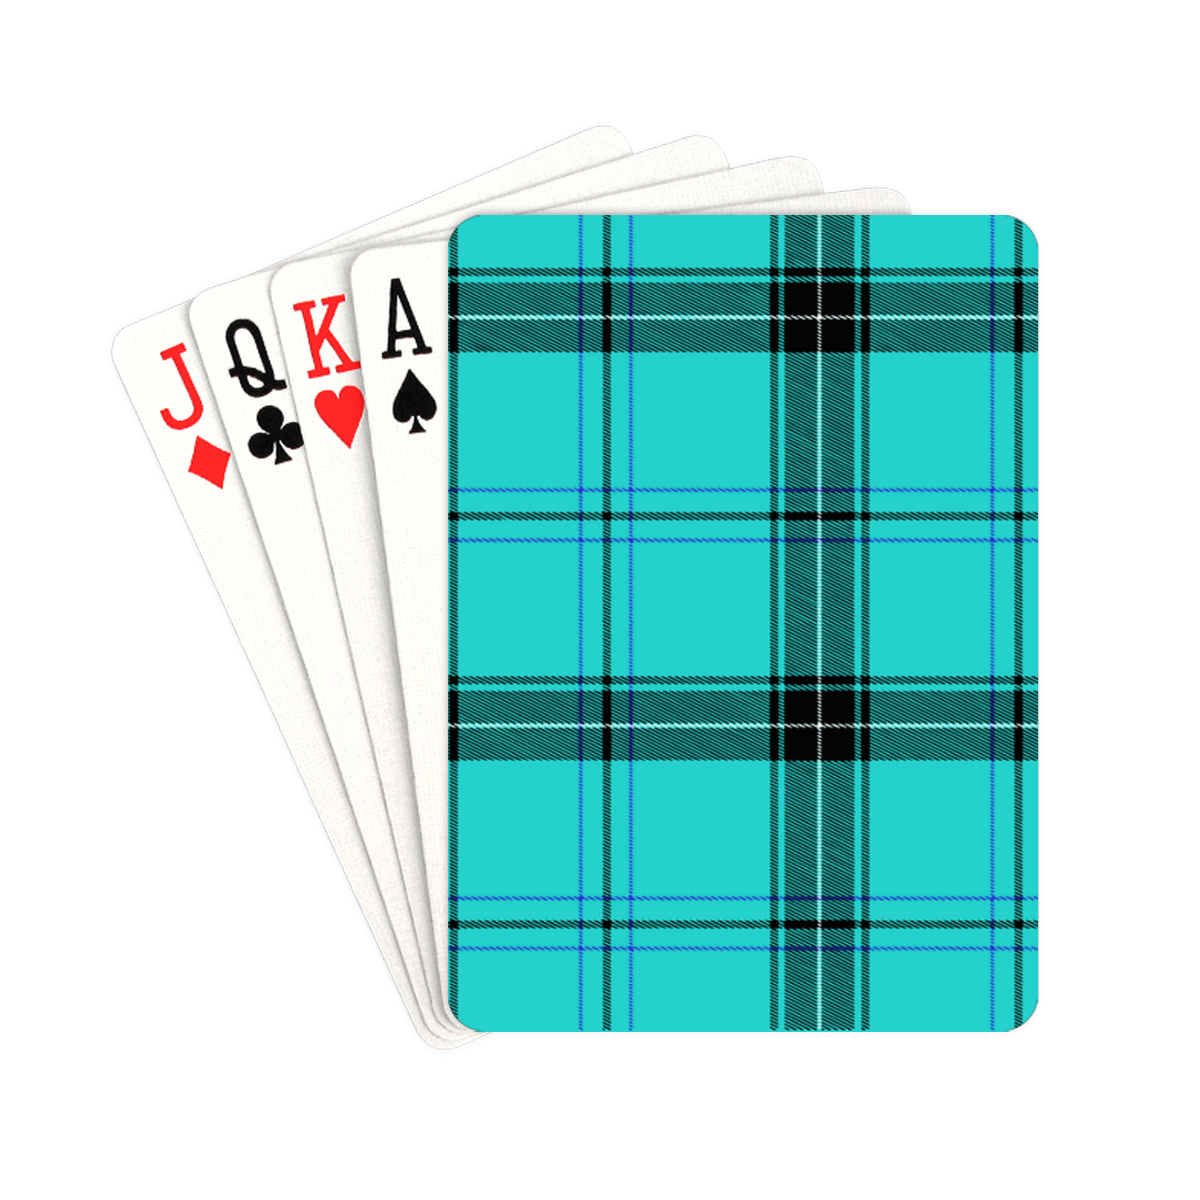 aqua plaid Playing Cards 2.5"x3.5"